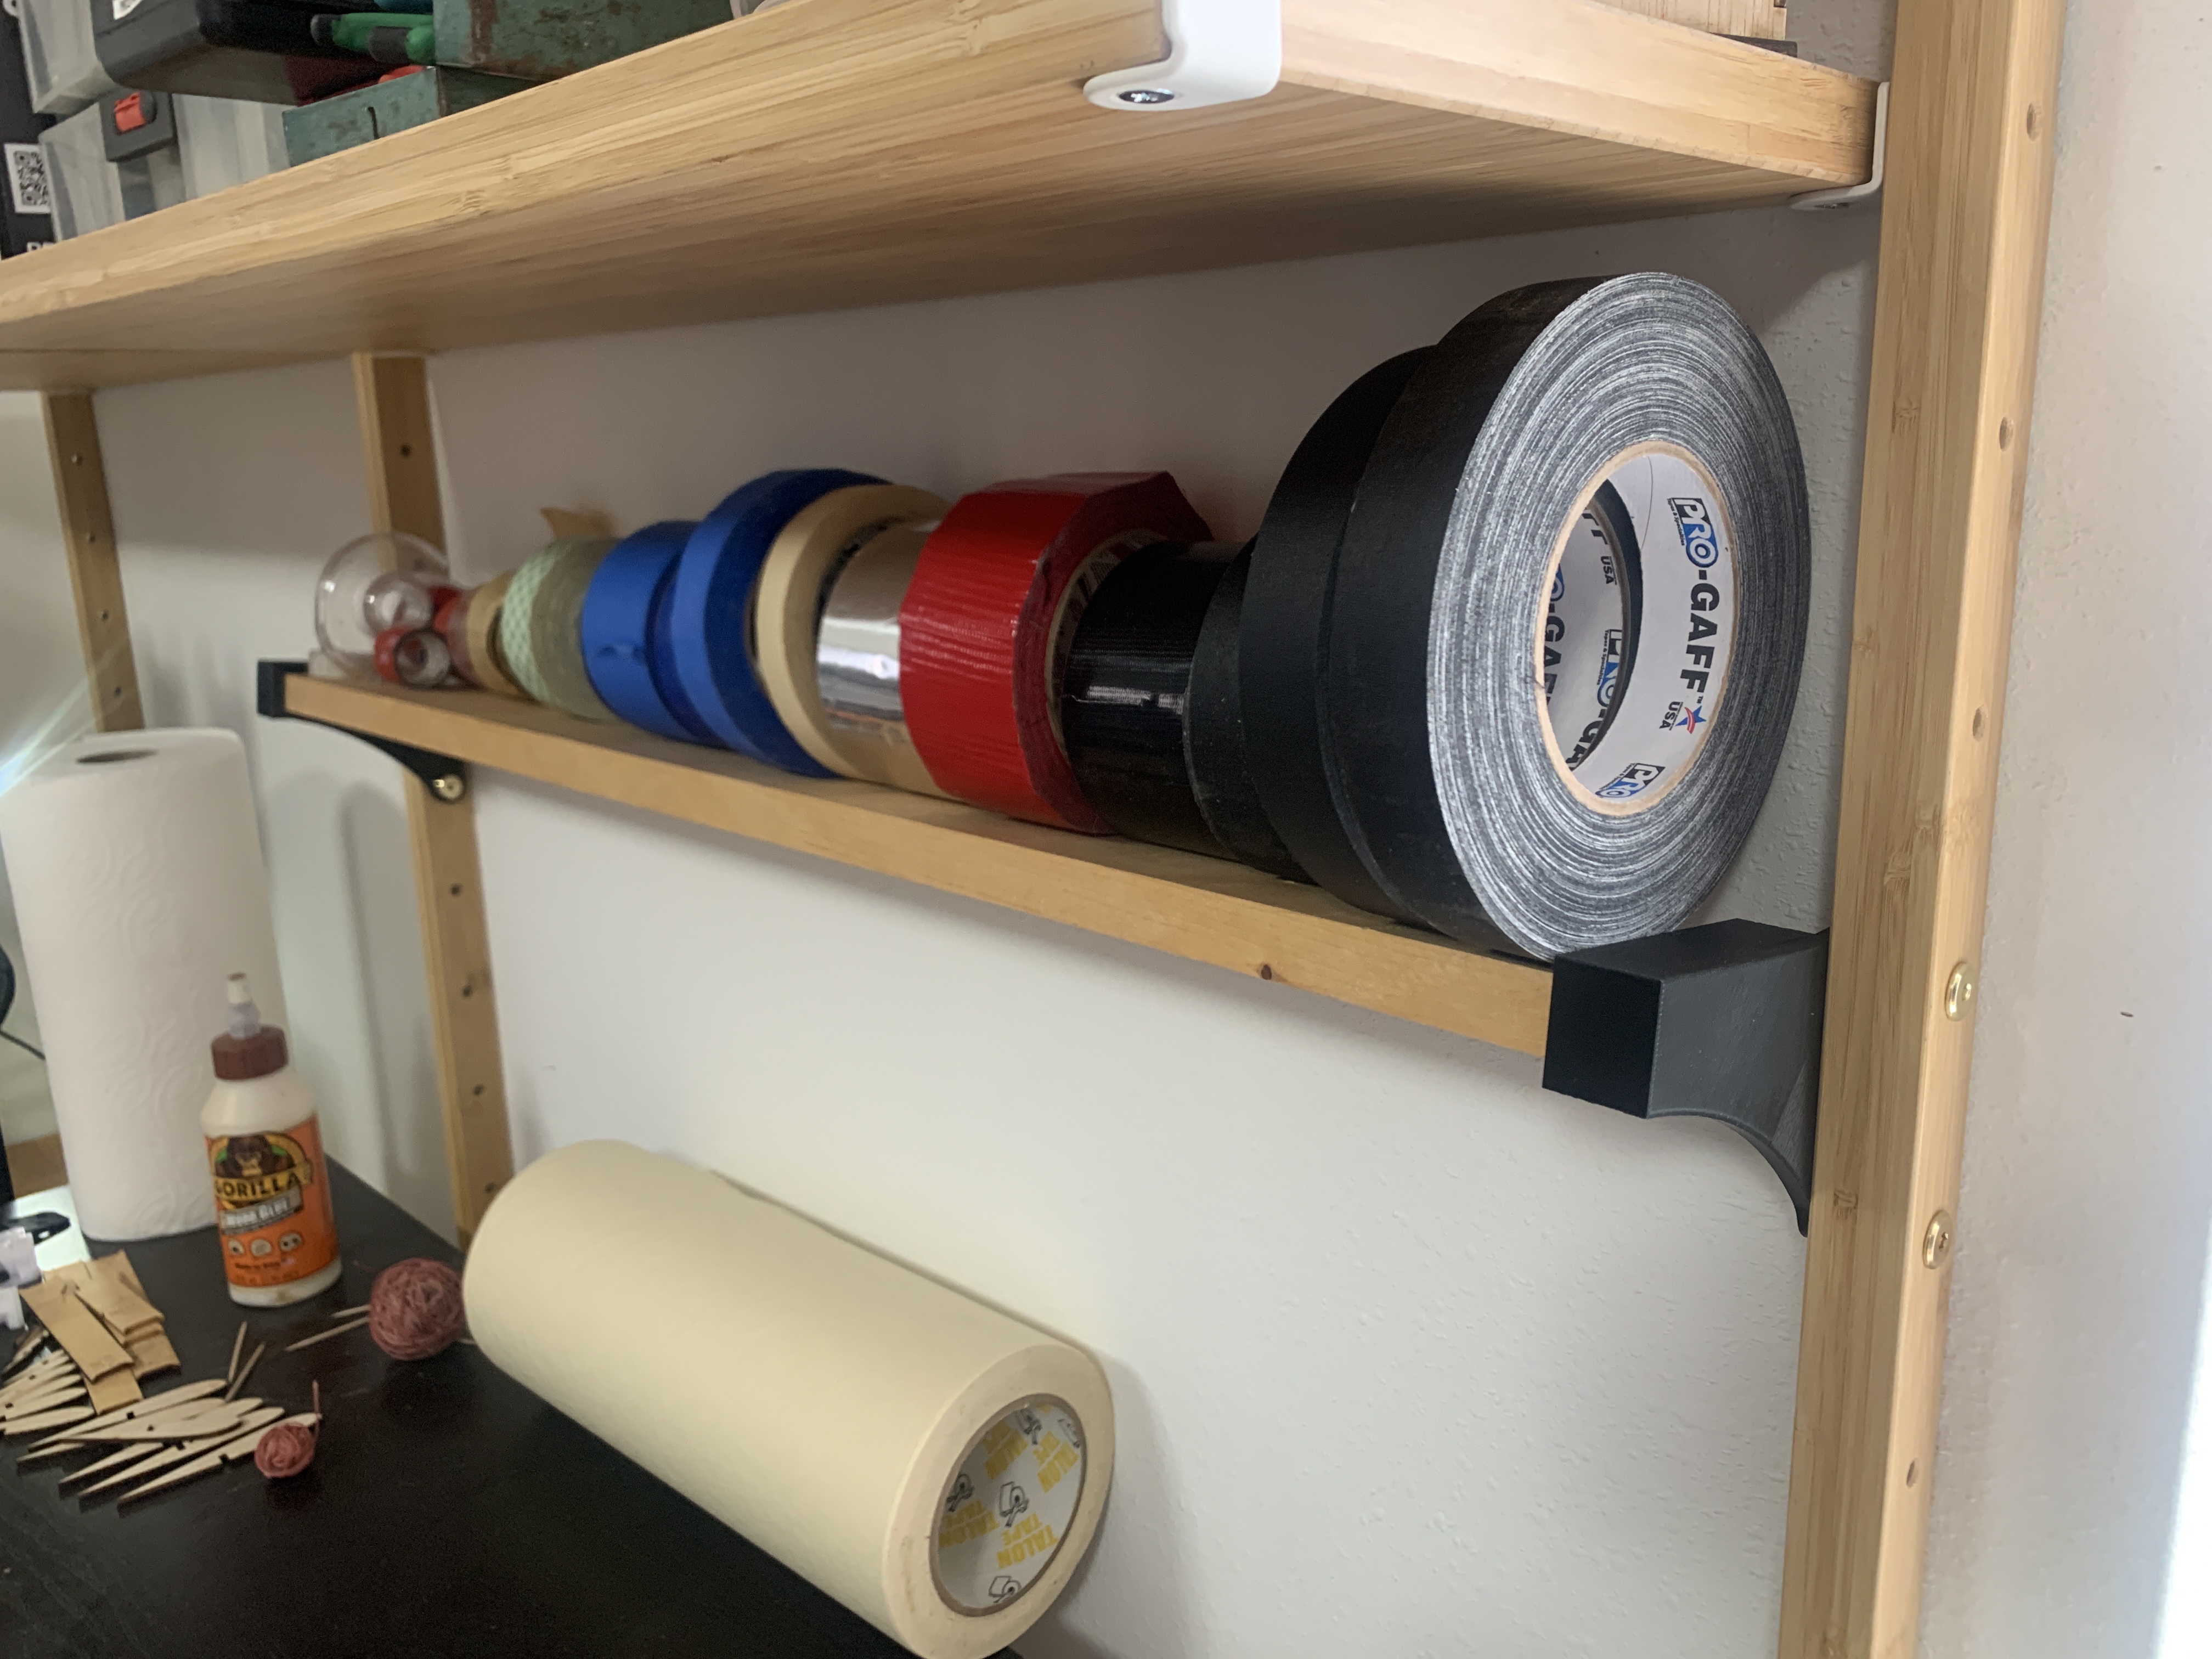 IKEA Svalnas Shelf Brackets (for tape roll storage)